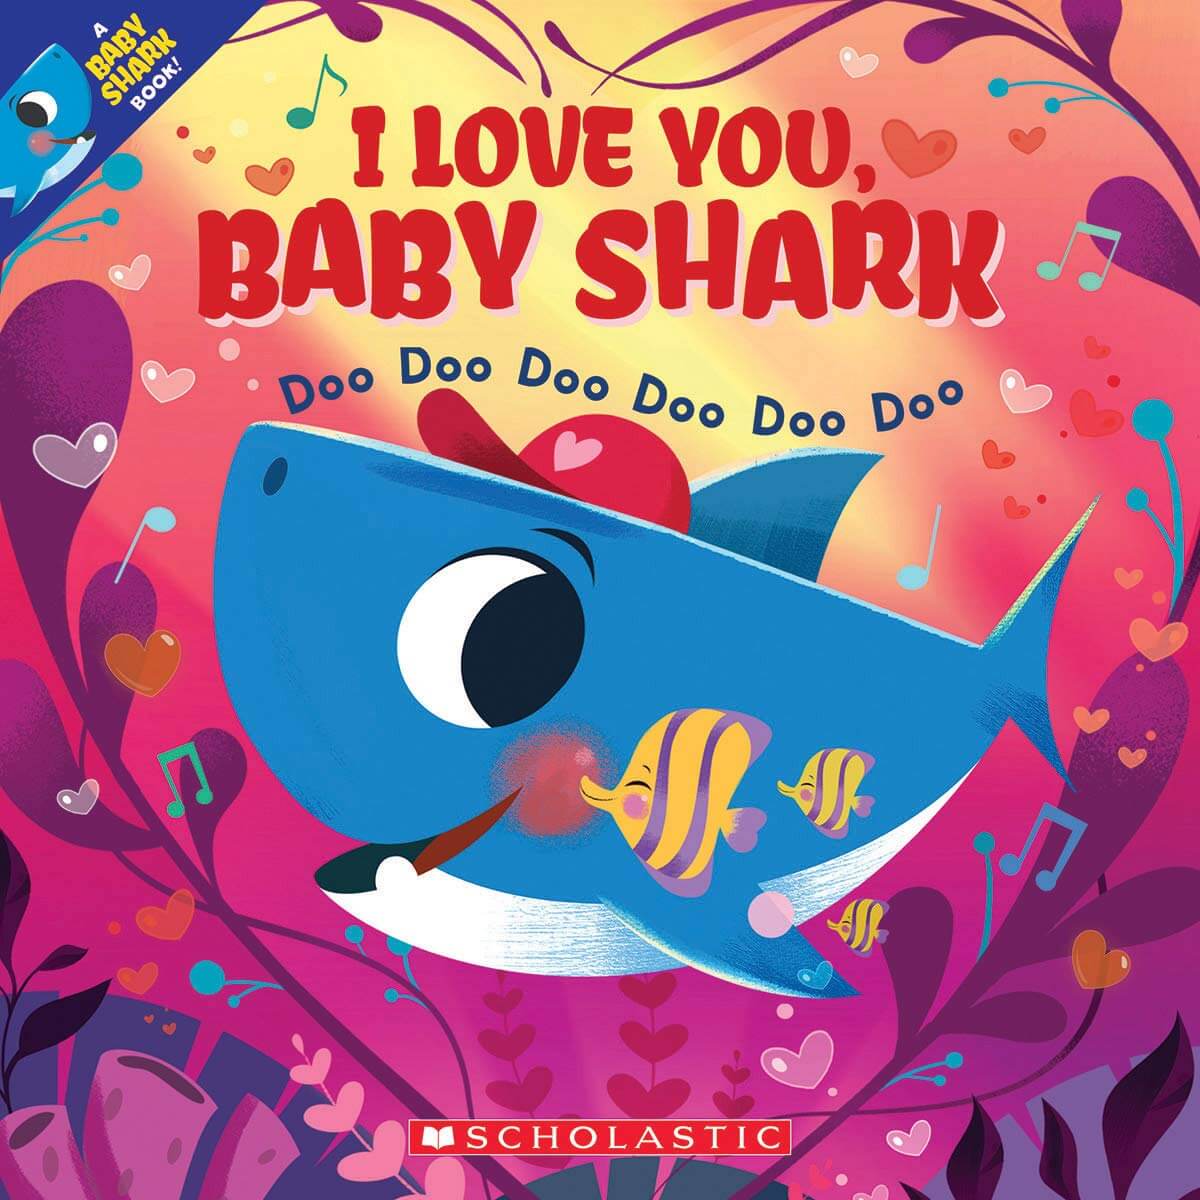 I Love You, Baby Shark: Doo Doo Doo Doo Doo Doo